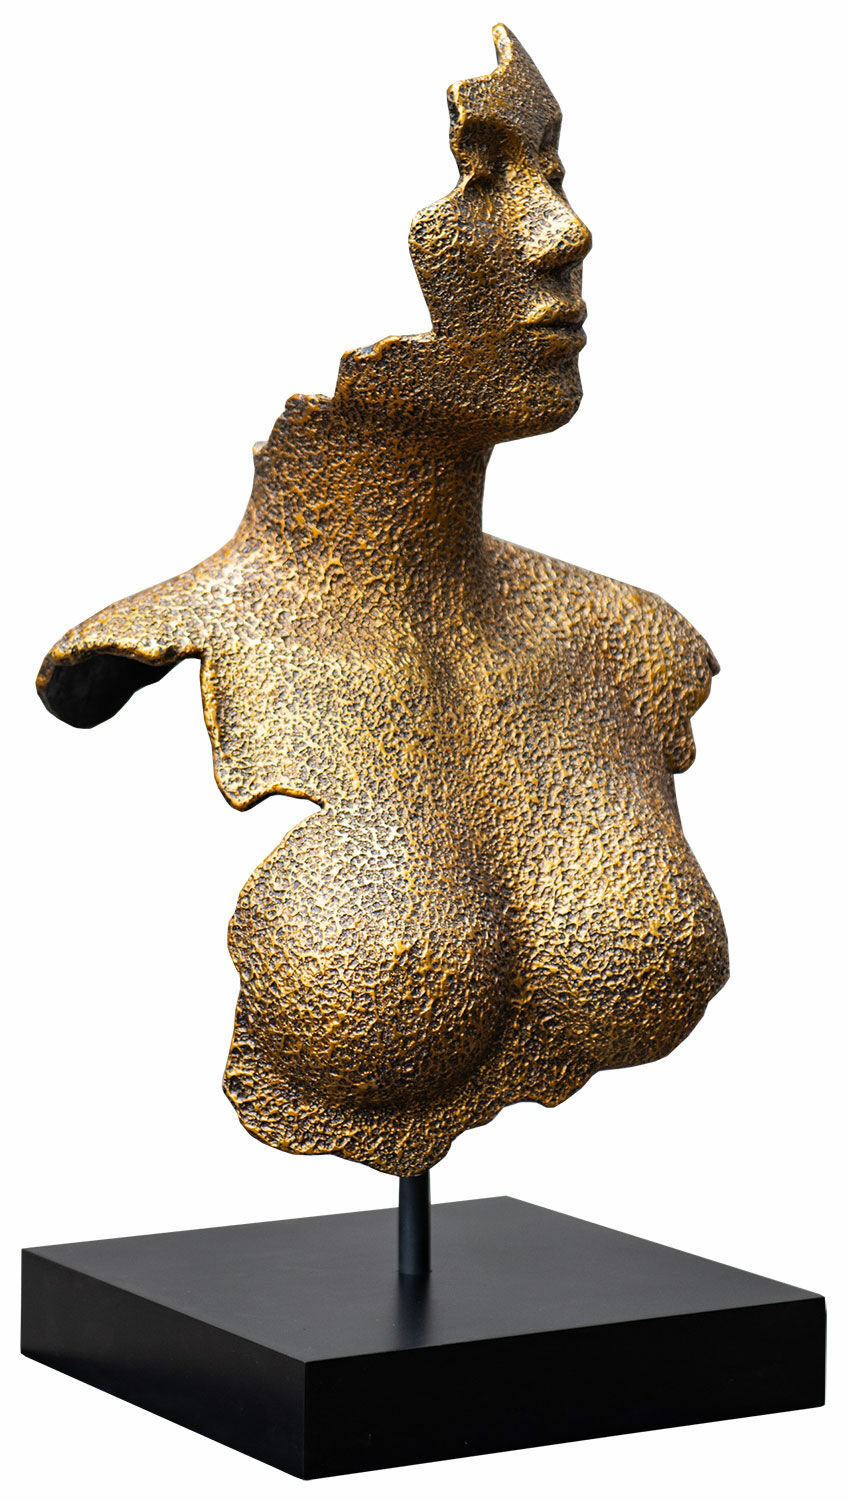 Sculpture "Donna Antique Gold", cast